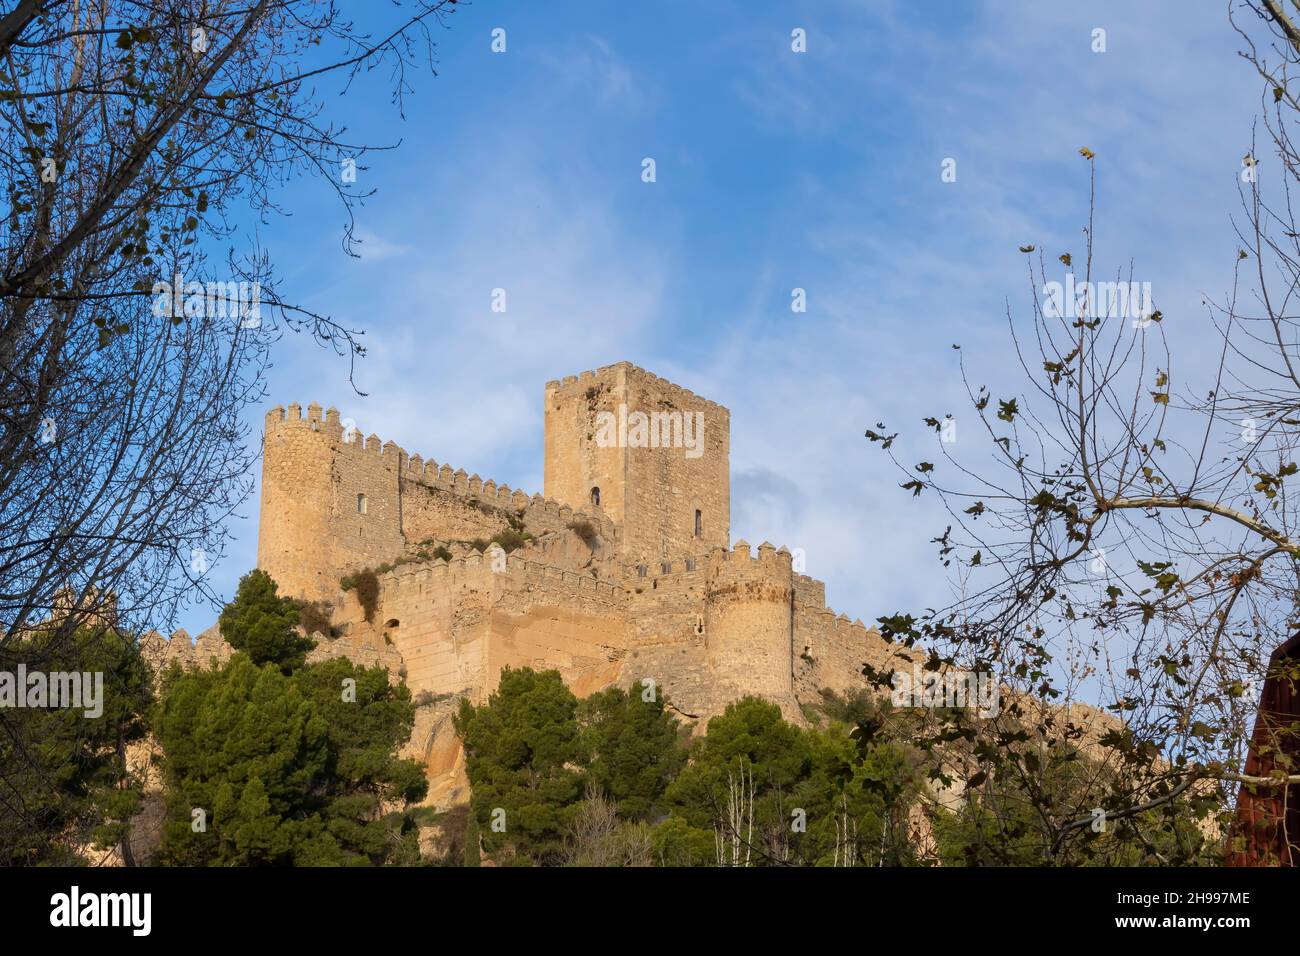 The Castle of Almansa (Spanish: Castillo de Almansa) is a castle located in Almansa, Spain. Stock Photo